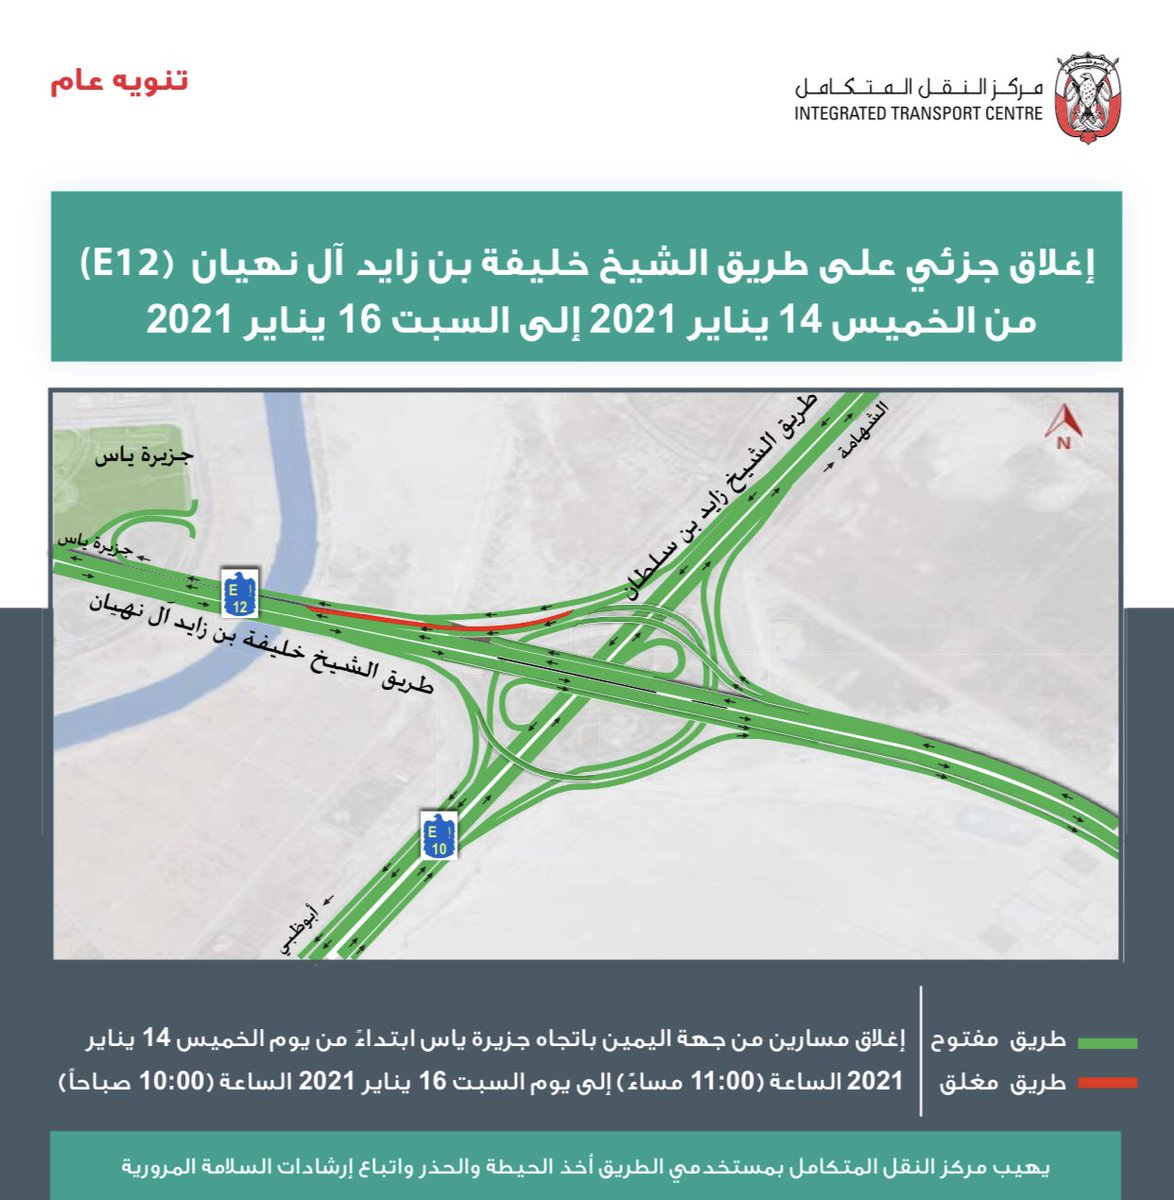 النقل المتكامل إغلاق جزئي على طريق الشيخ خليفة بن زايد آل نهيان في أبوظبي البيان القارئ دائما